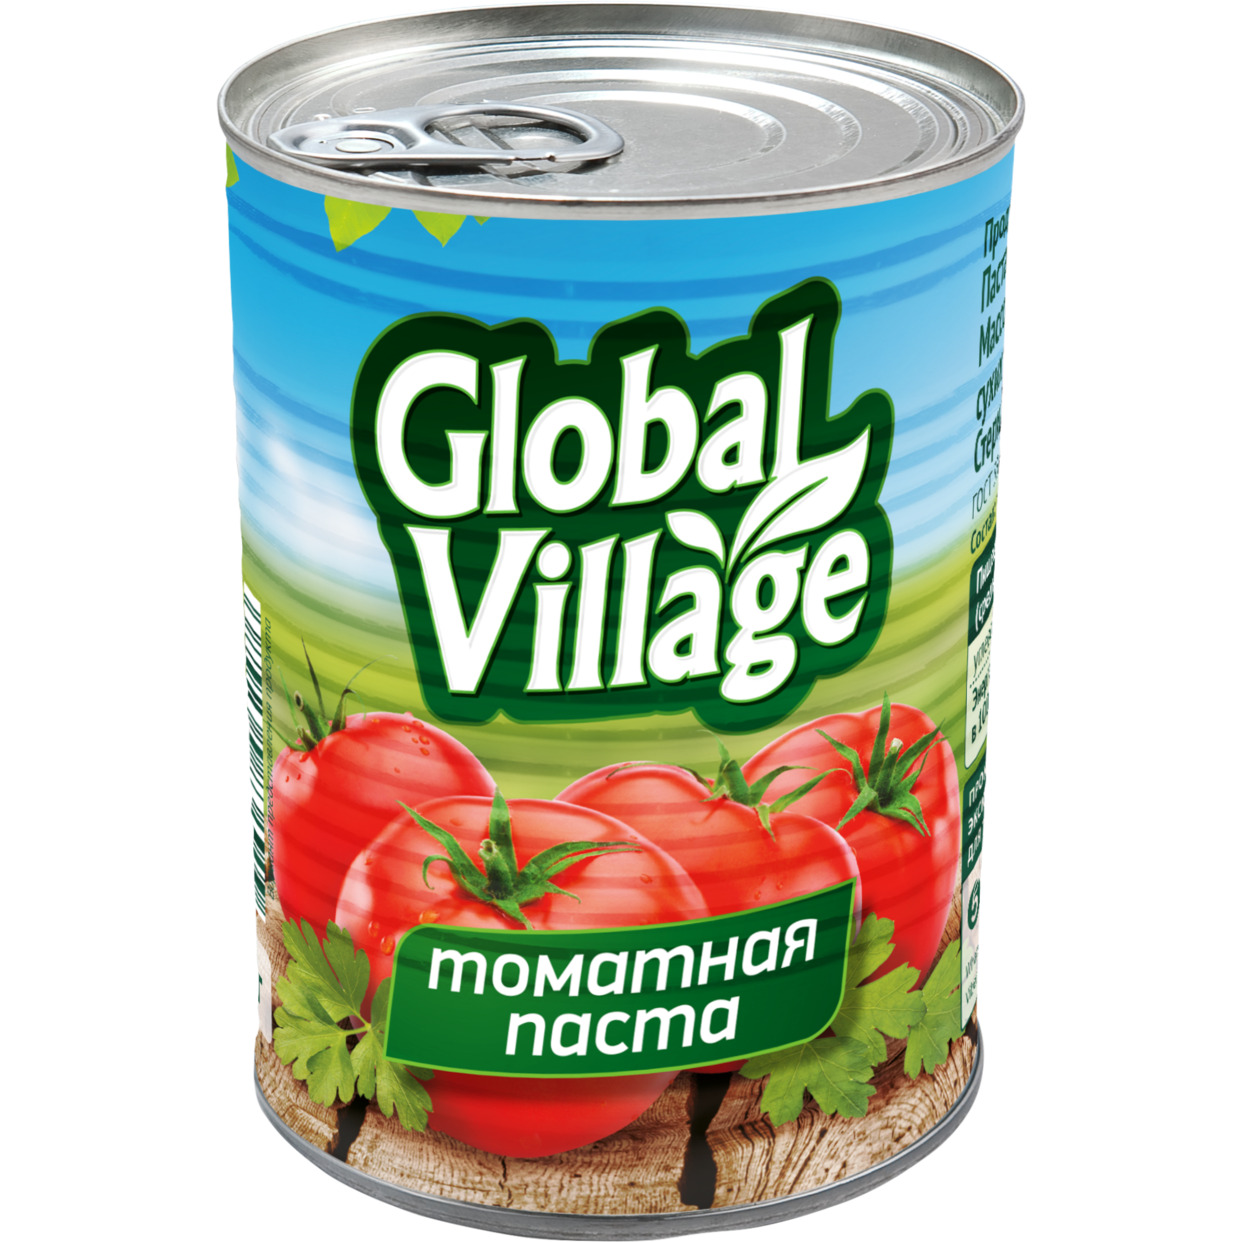 Паста томатная "Global village" 25% ж/б 380 г по акции в Пятерочке